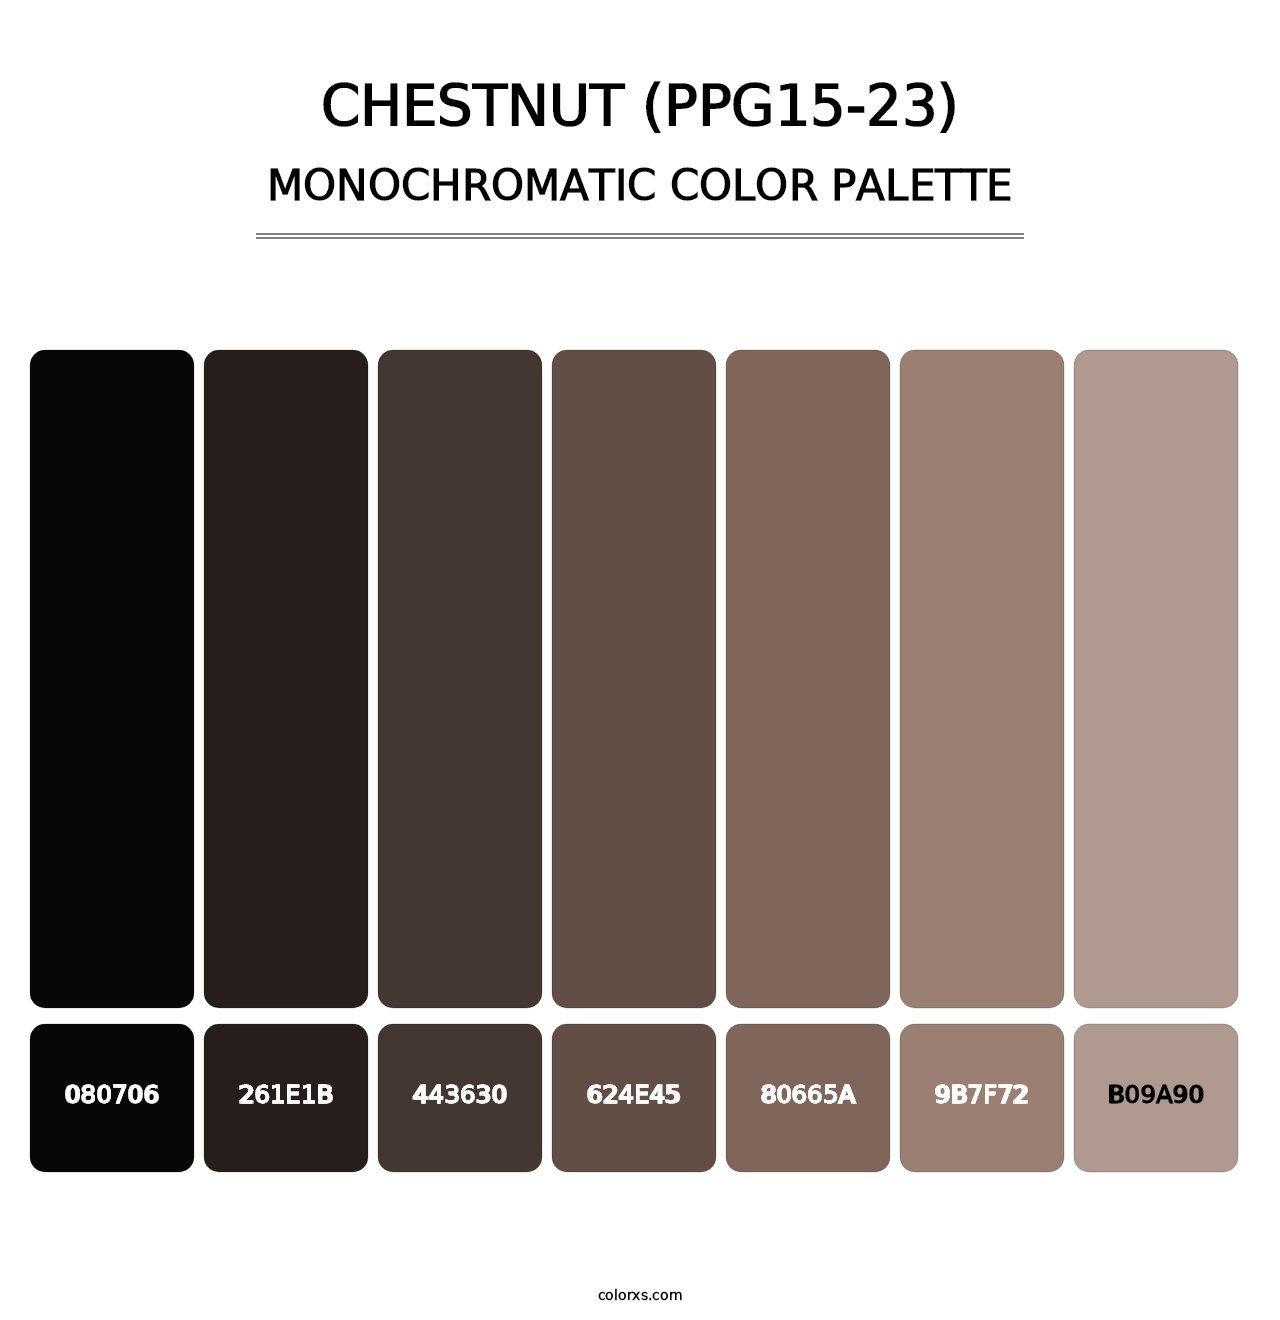 Chestnut (PPG15-23) - Monochromatic Color Palette